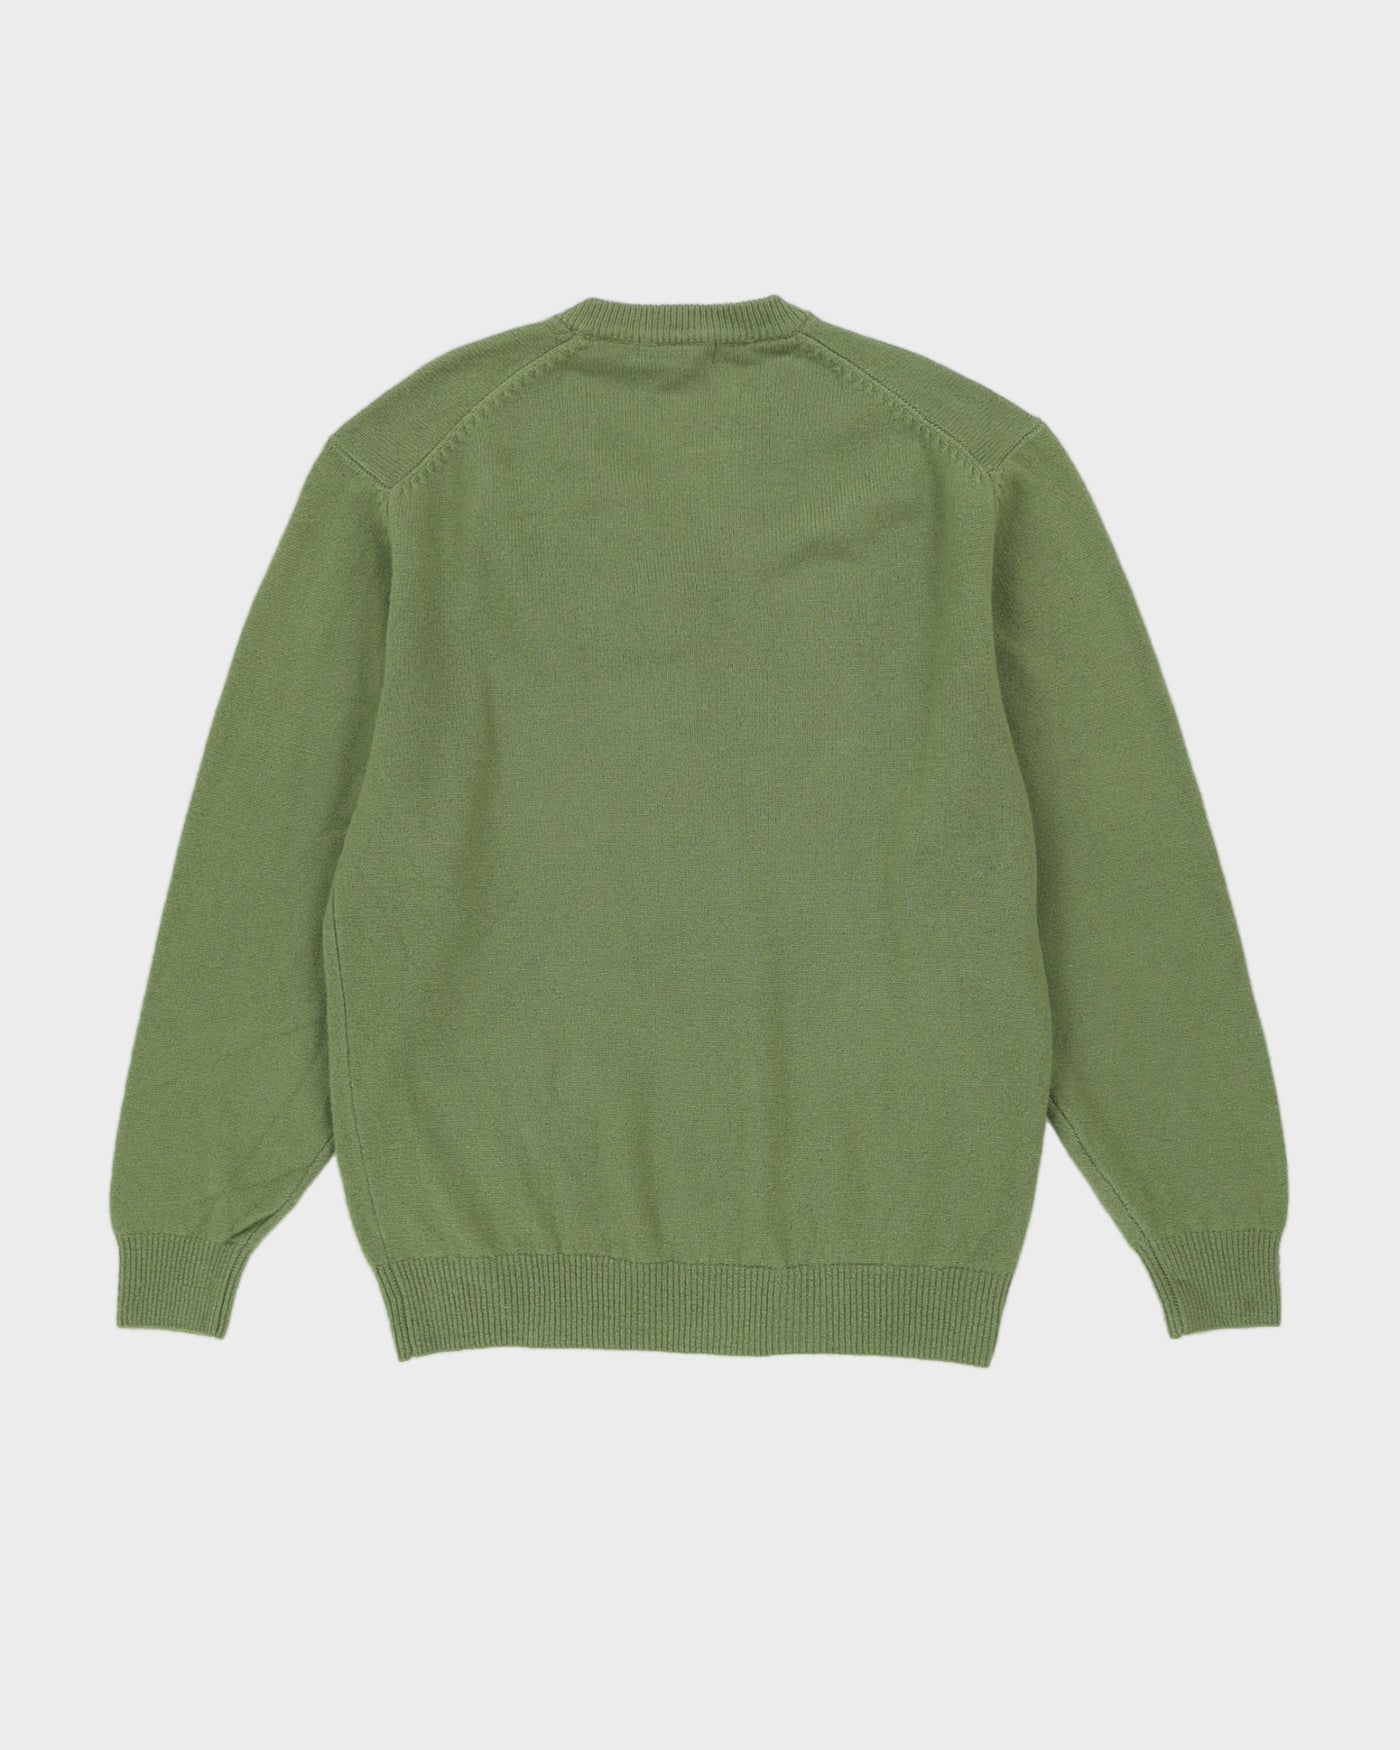 Green Wool Lightweight Knitted Jumper - M